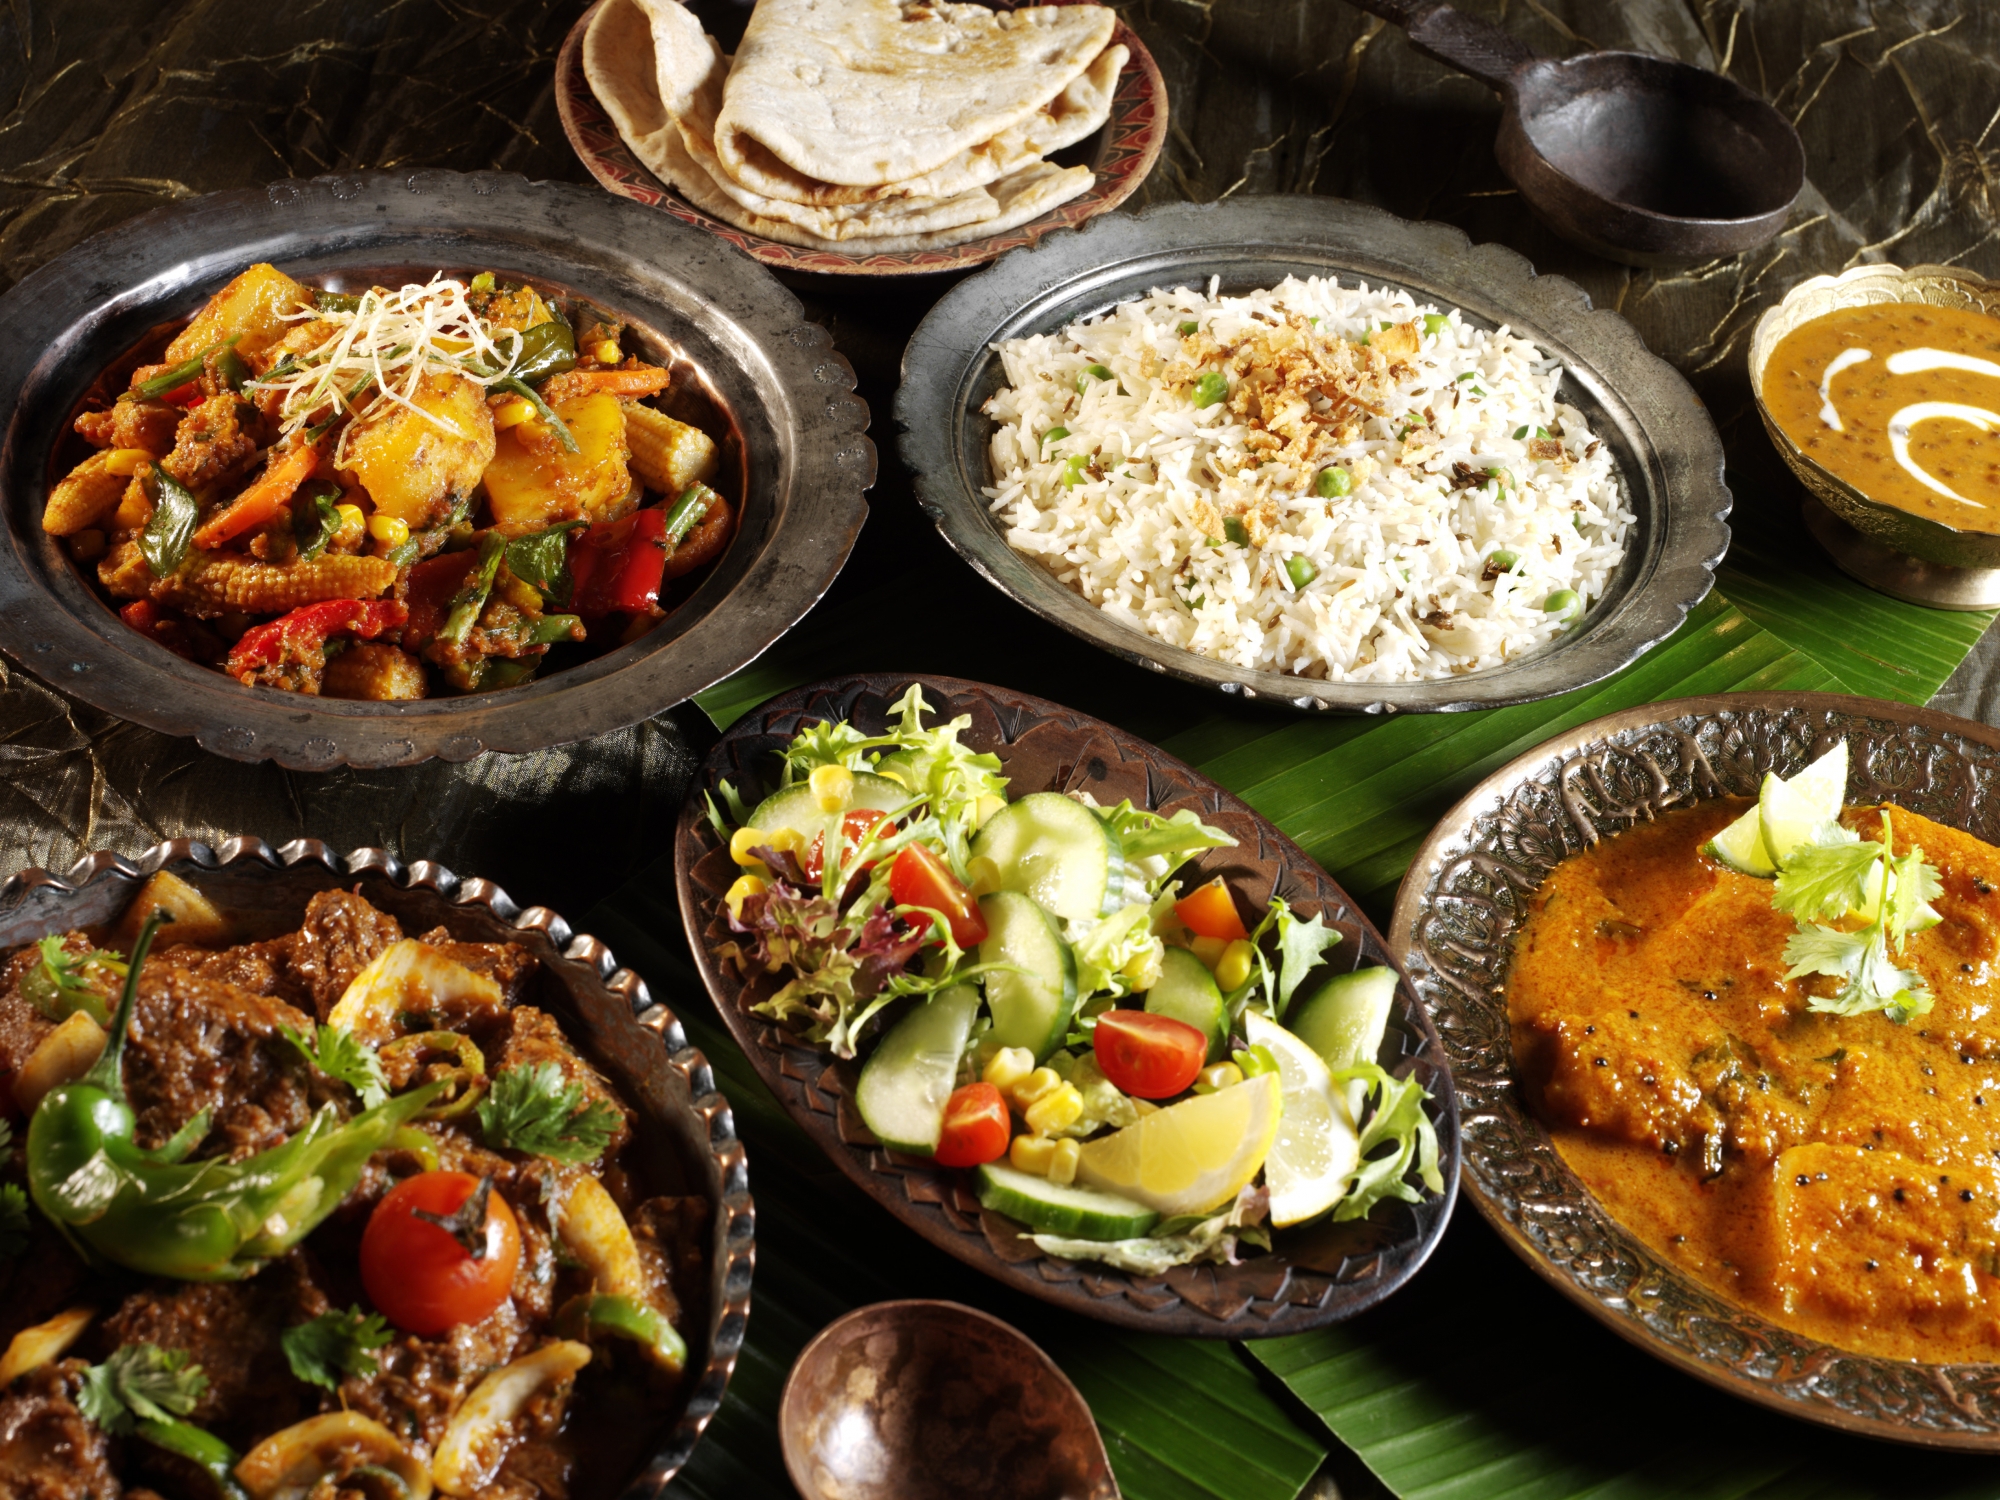 Le World Food Festival vous propose un voyage culinaire aux quatre coins du monde. 